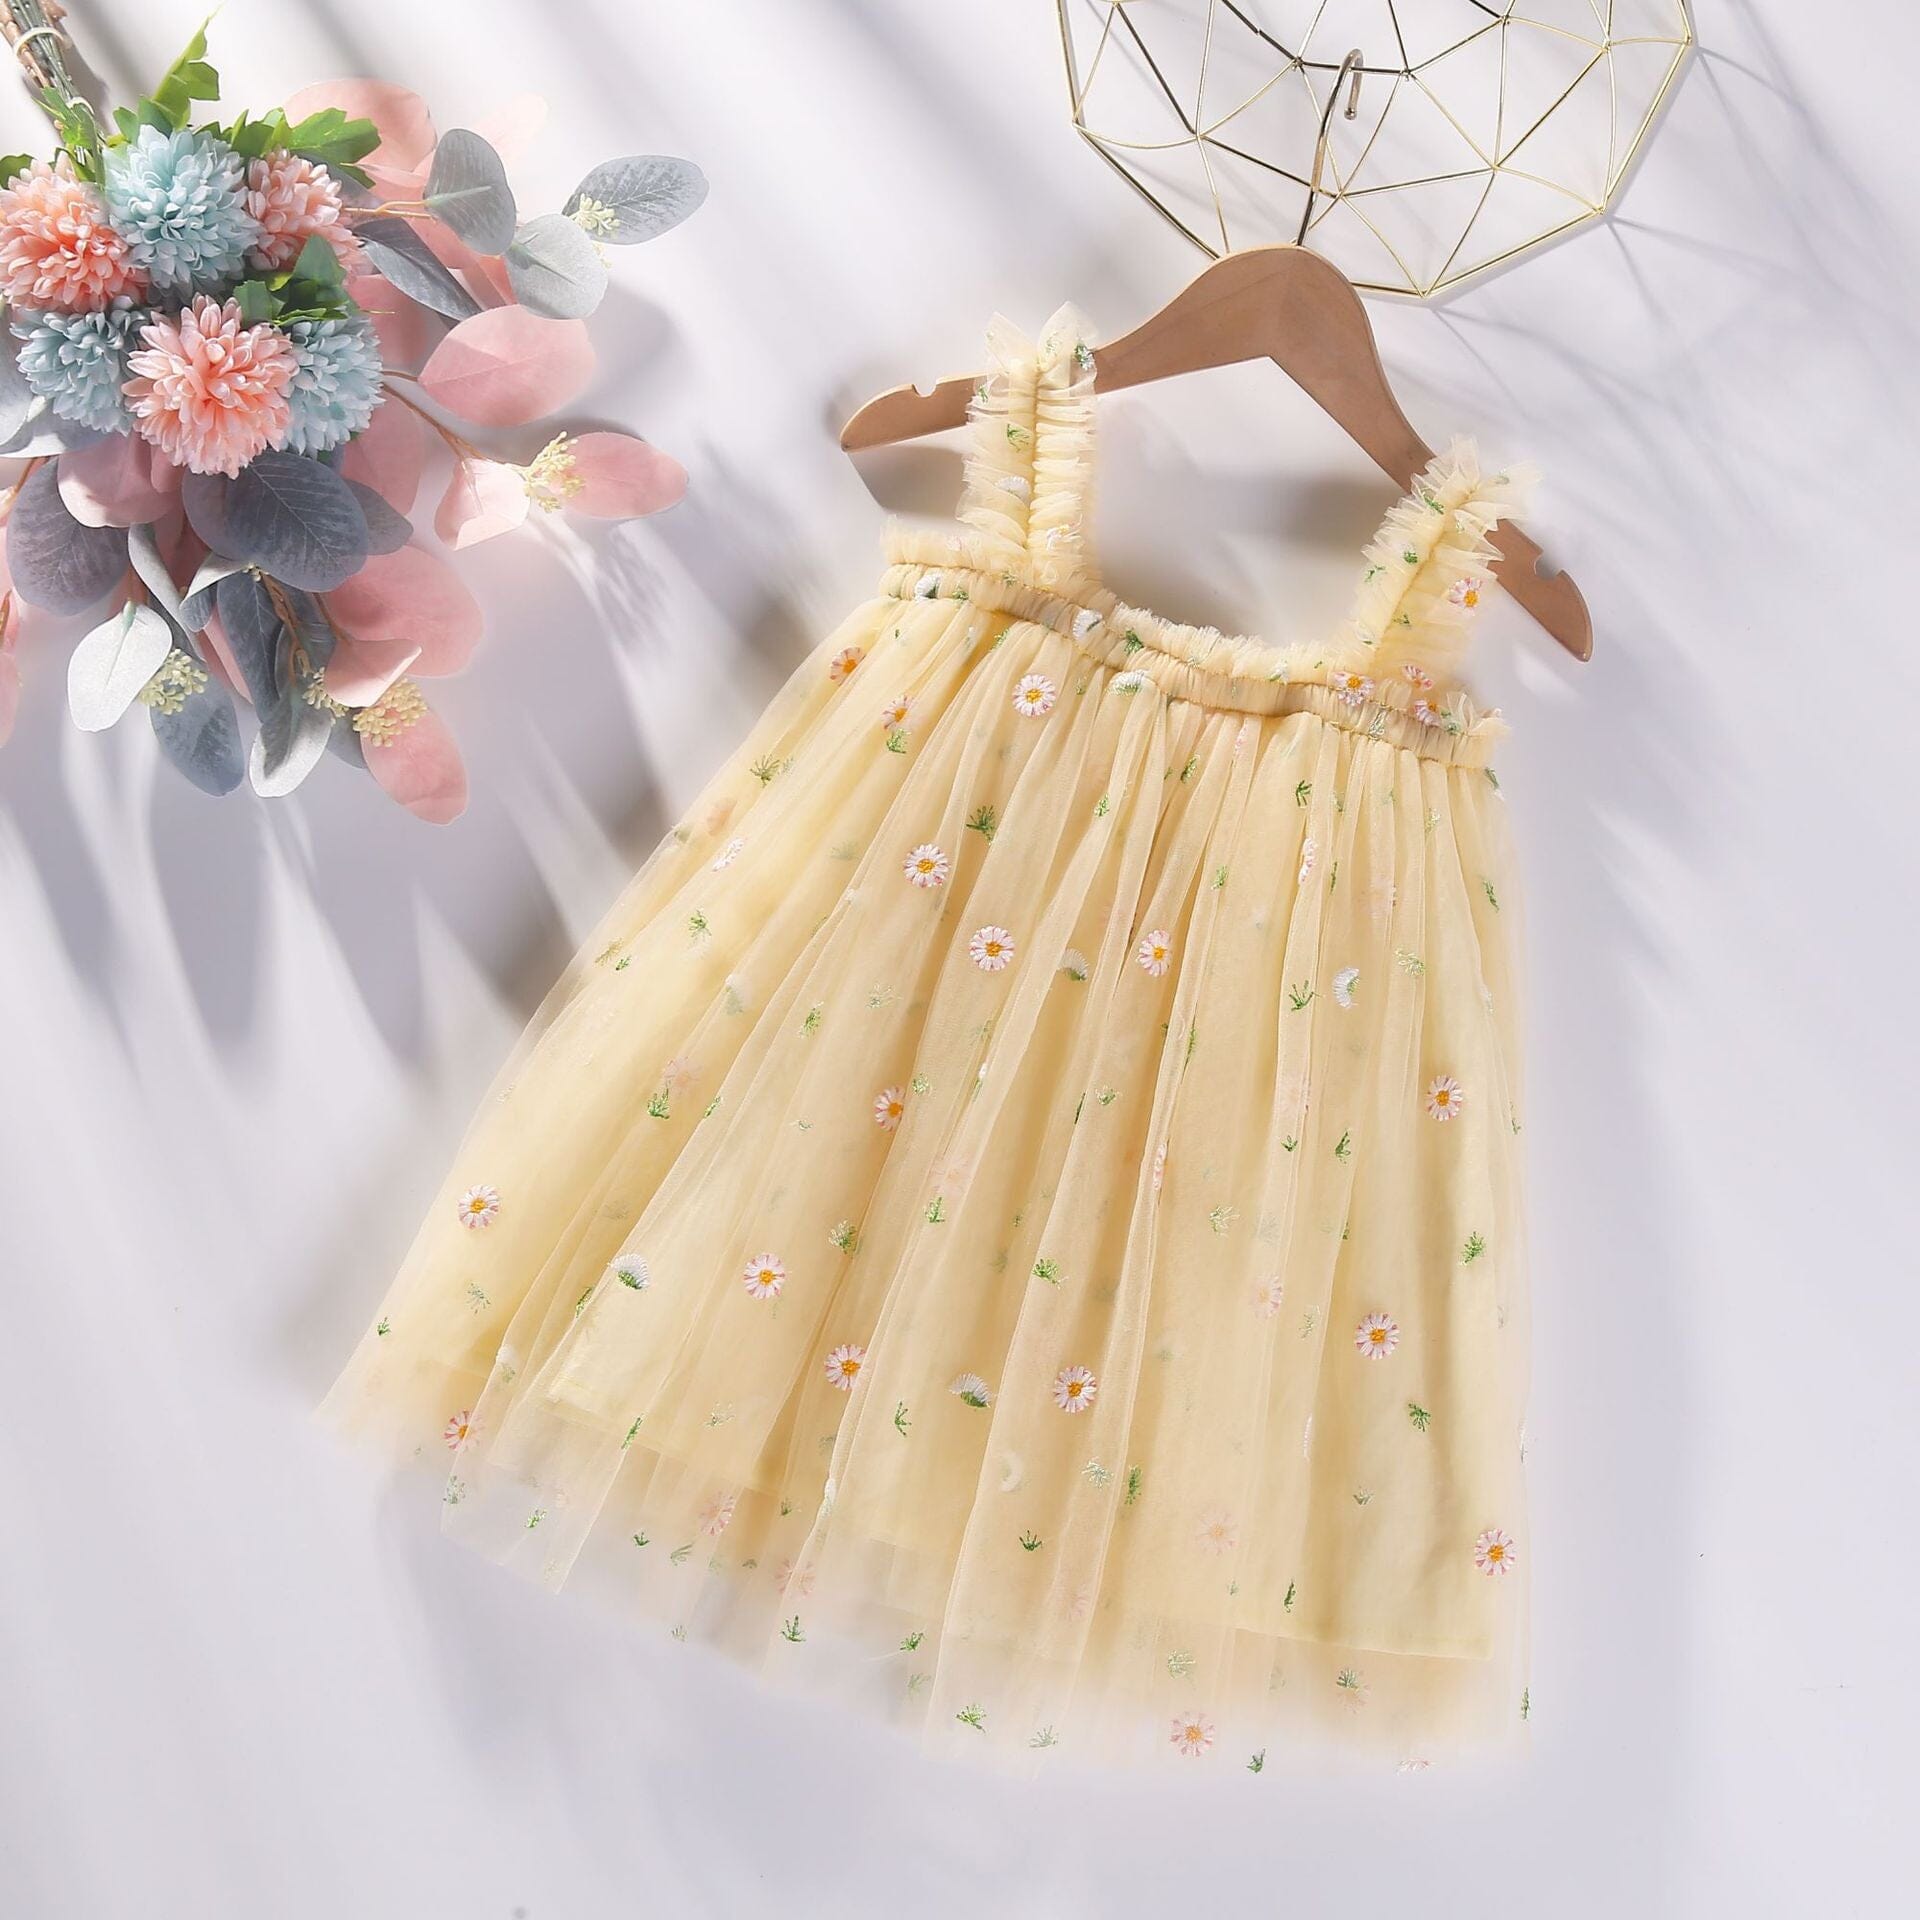 Vestido Infantil Bordado e Tule Loja Click Certo Amarelo Florzinhas 6-12 Meses 